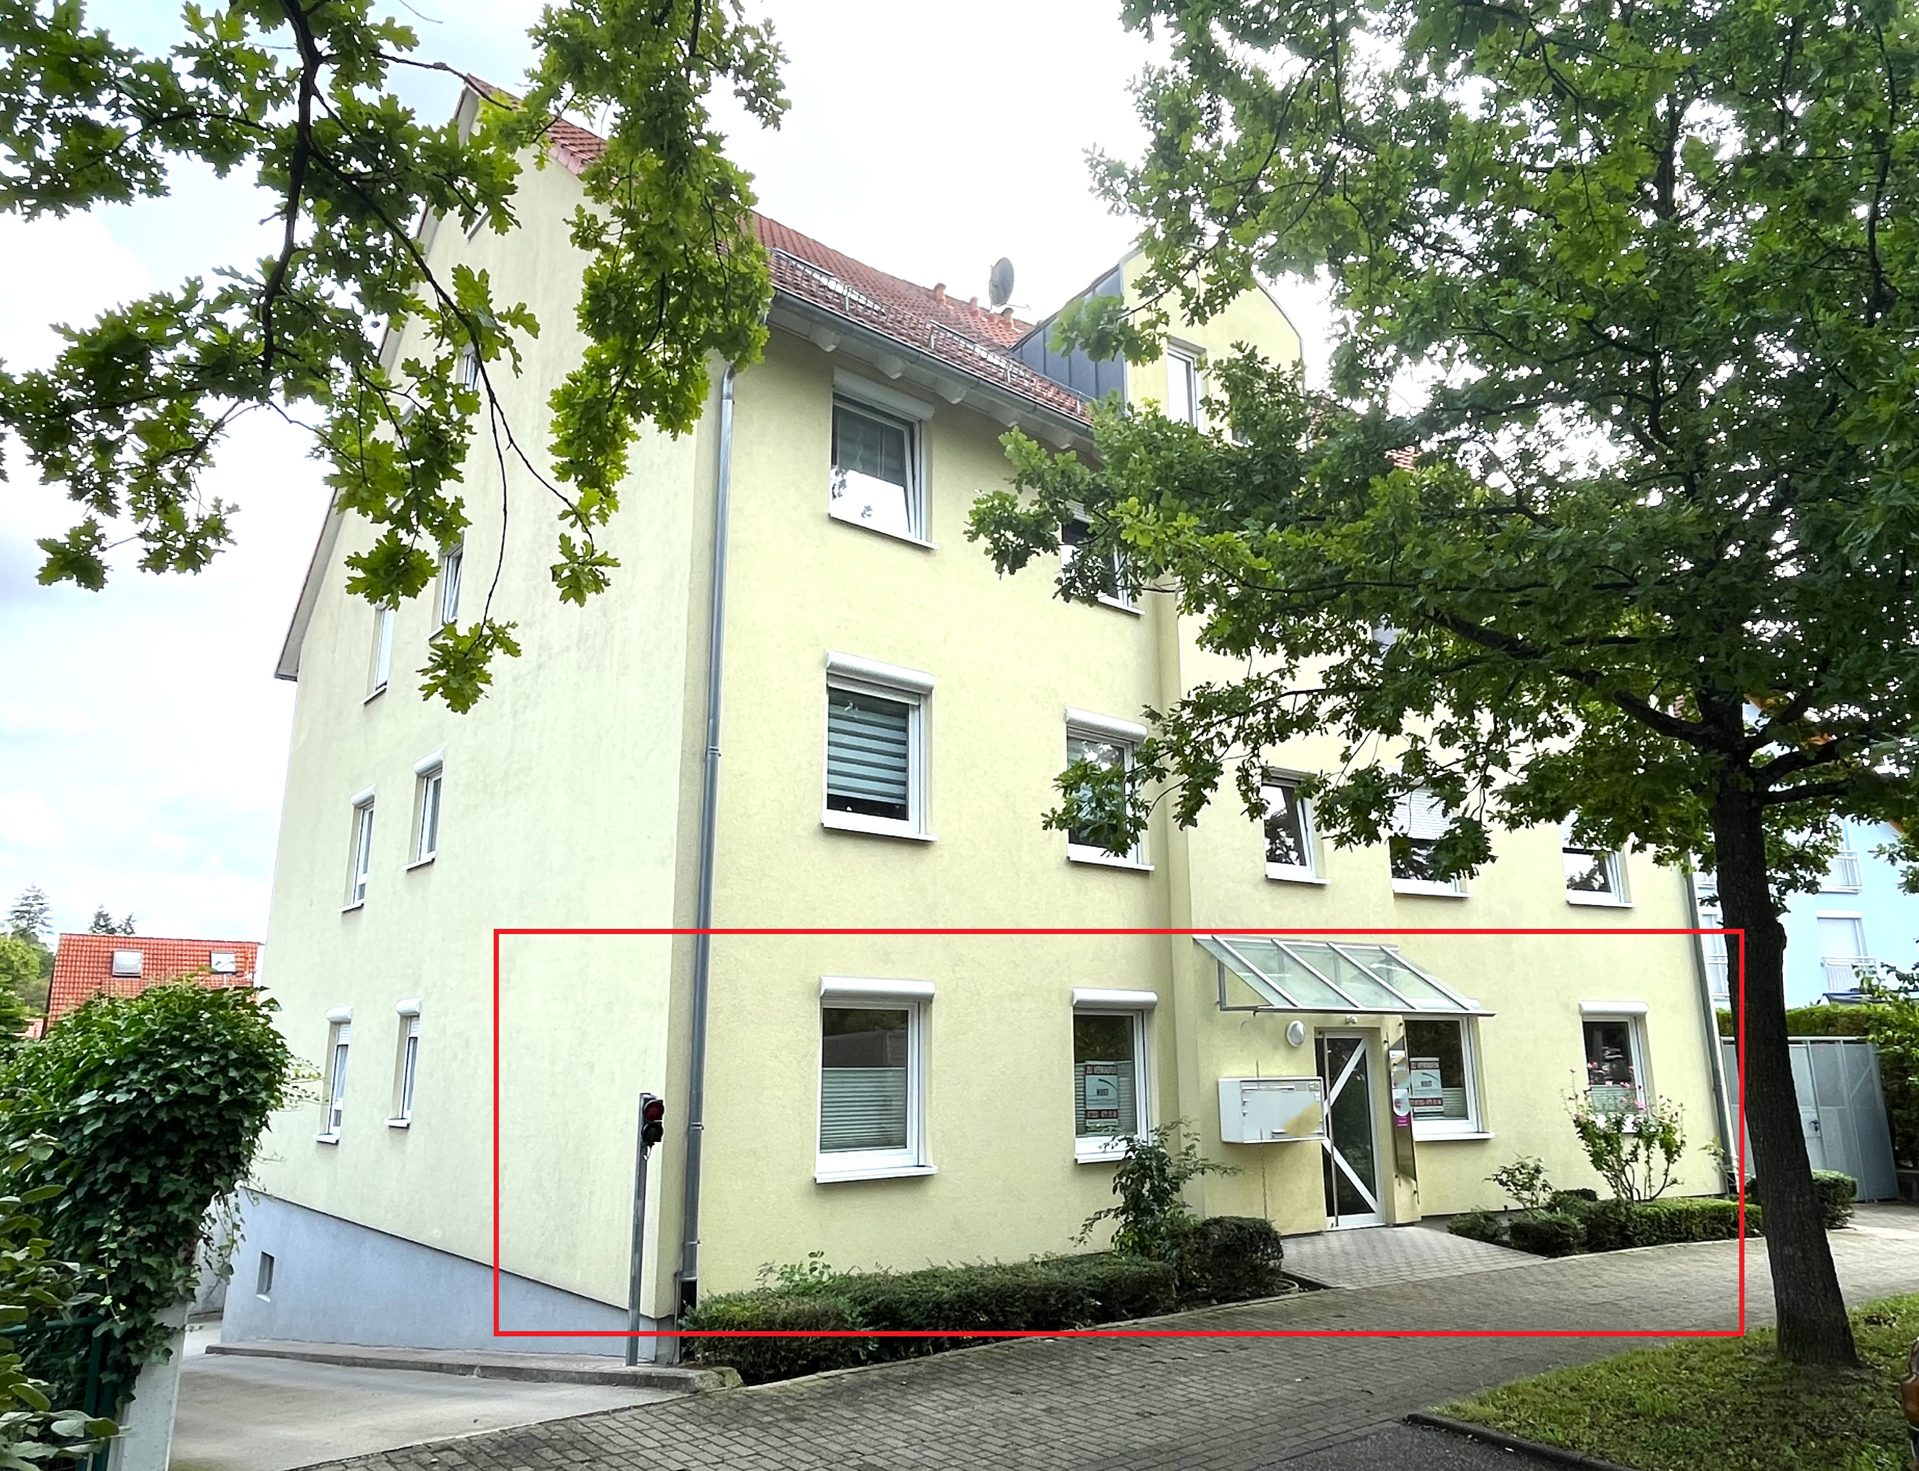 HUST Immobilien GmbH & Co. KG - Immobilienangebot - Bretten - Alle - Neuwertige Gewerbeeinheit oder Praxisräume in gepflegtem Wohnhaus, TOP-Lage in Bretten